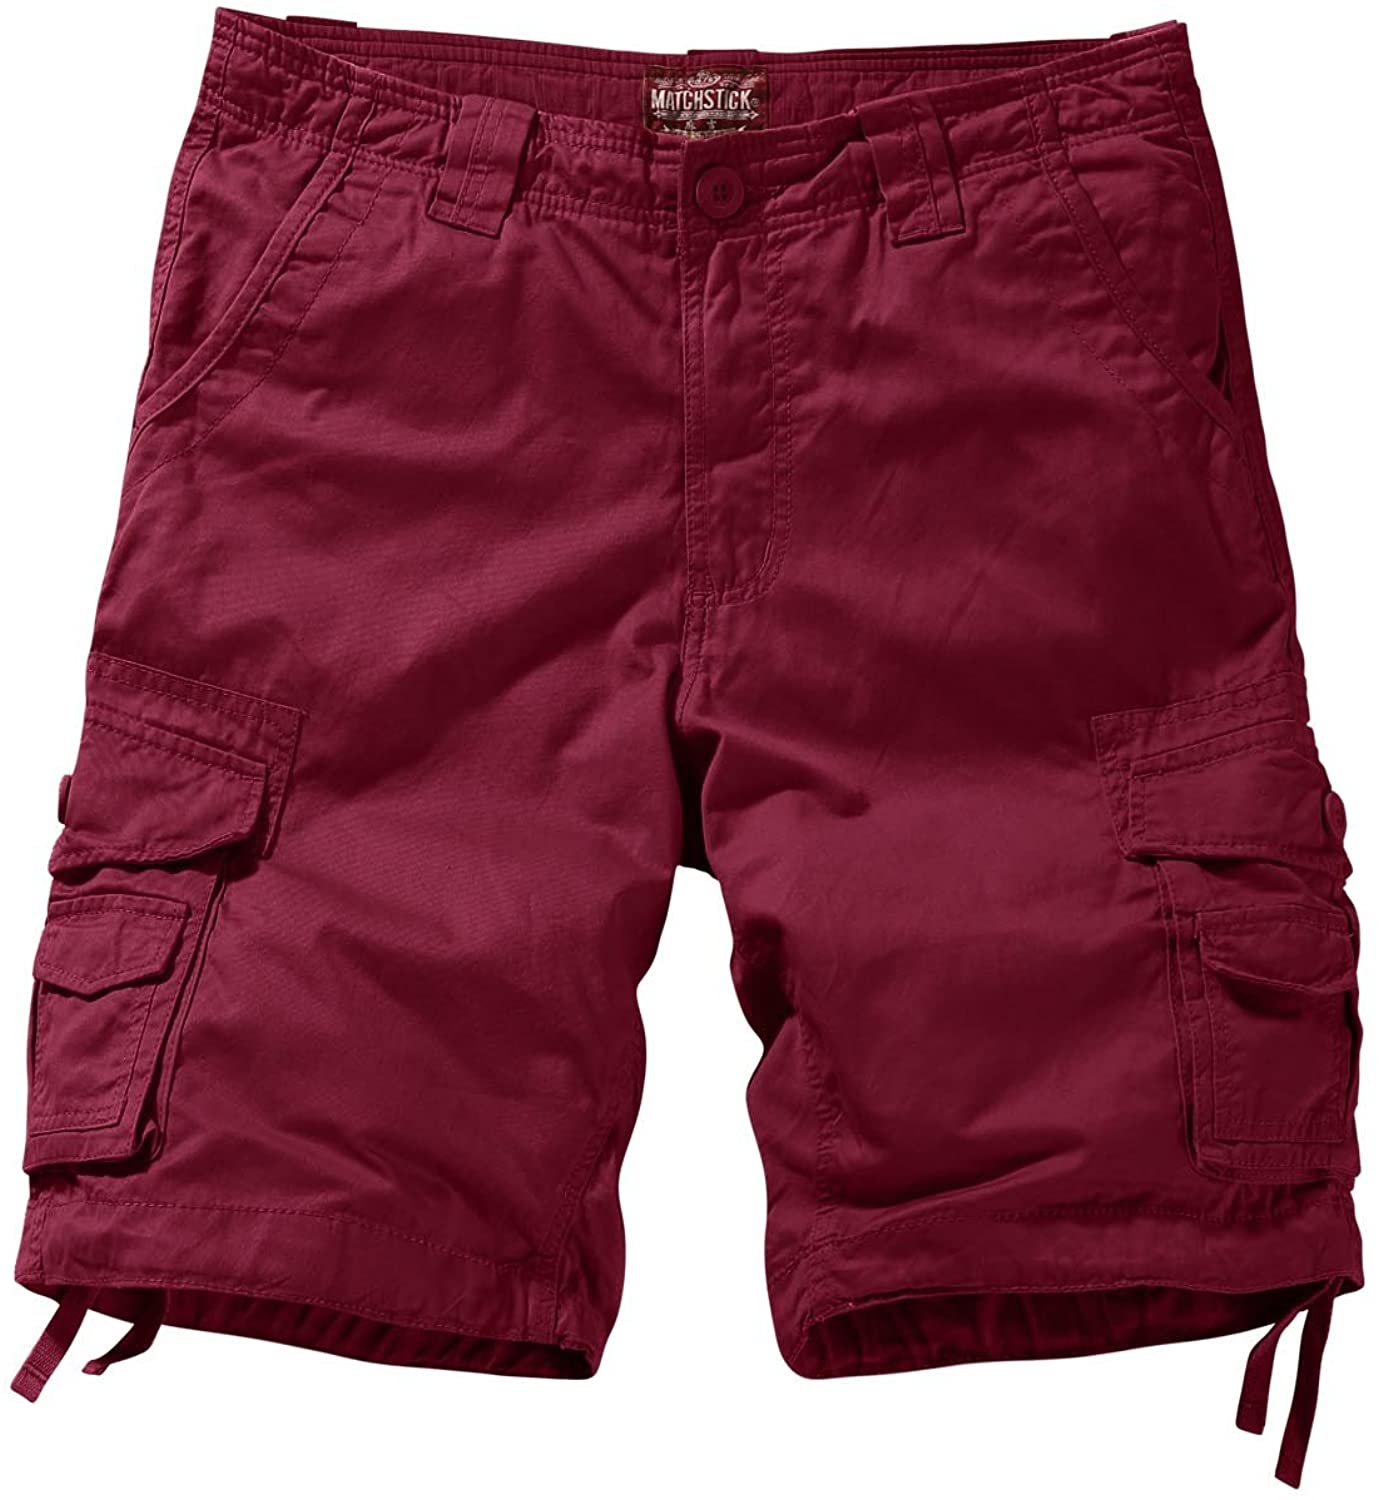 Match Men's Cargo Shorts eBay